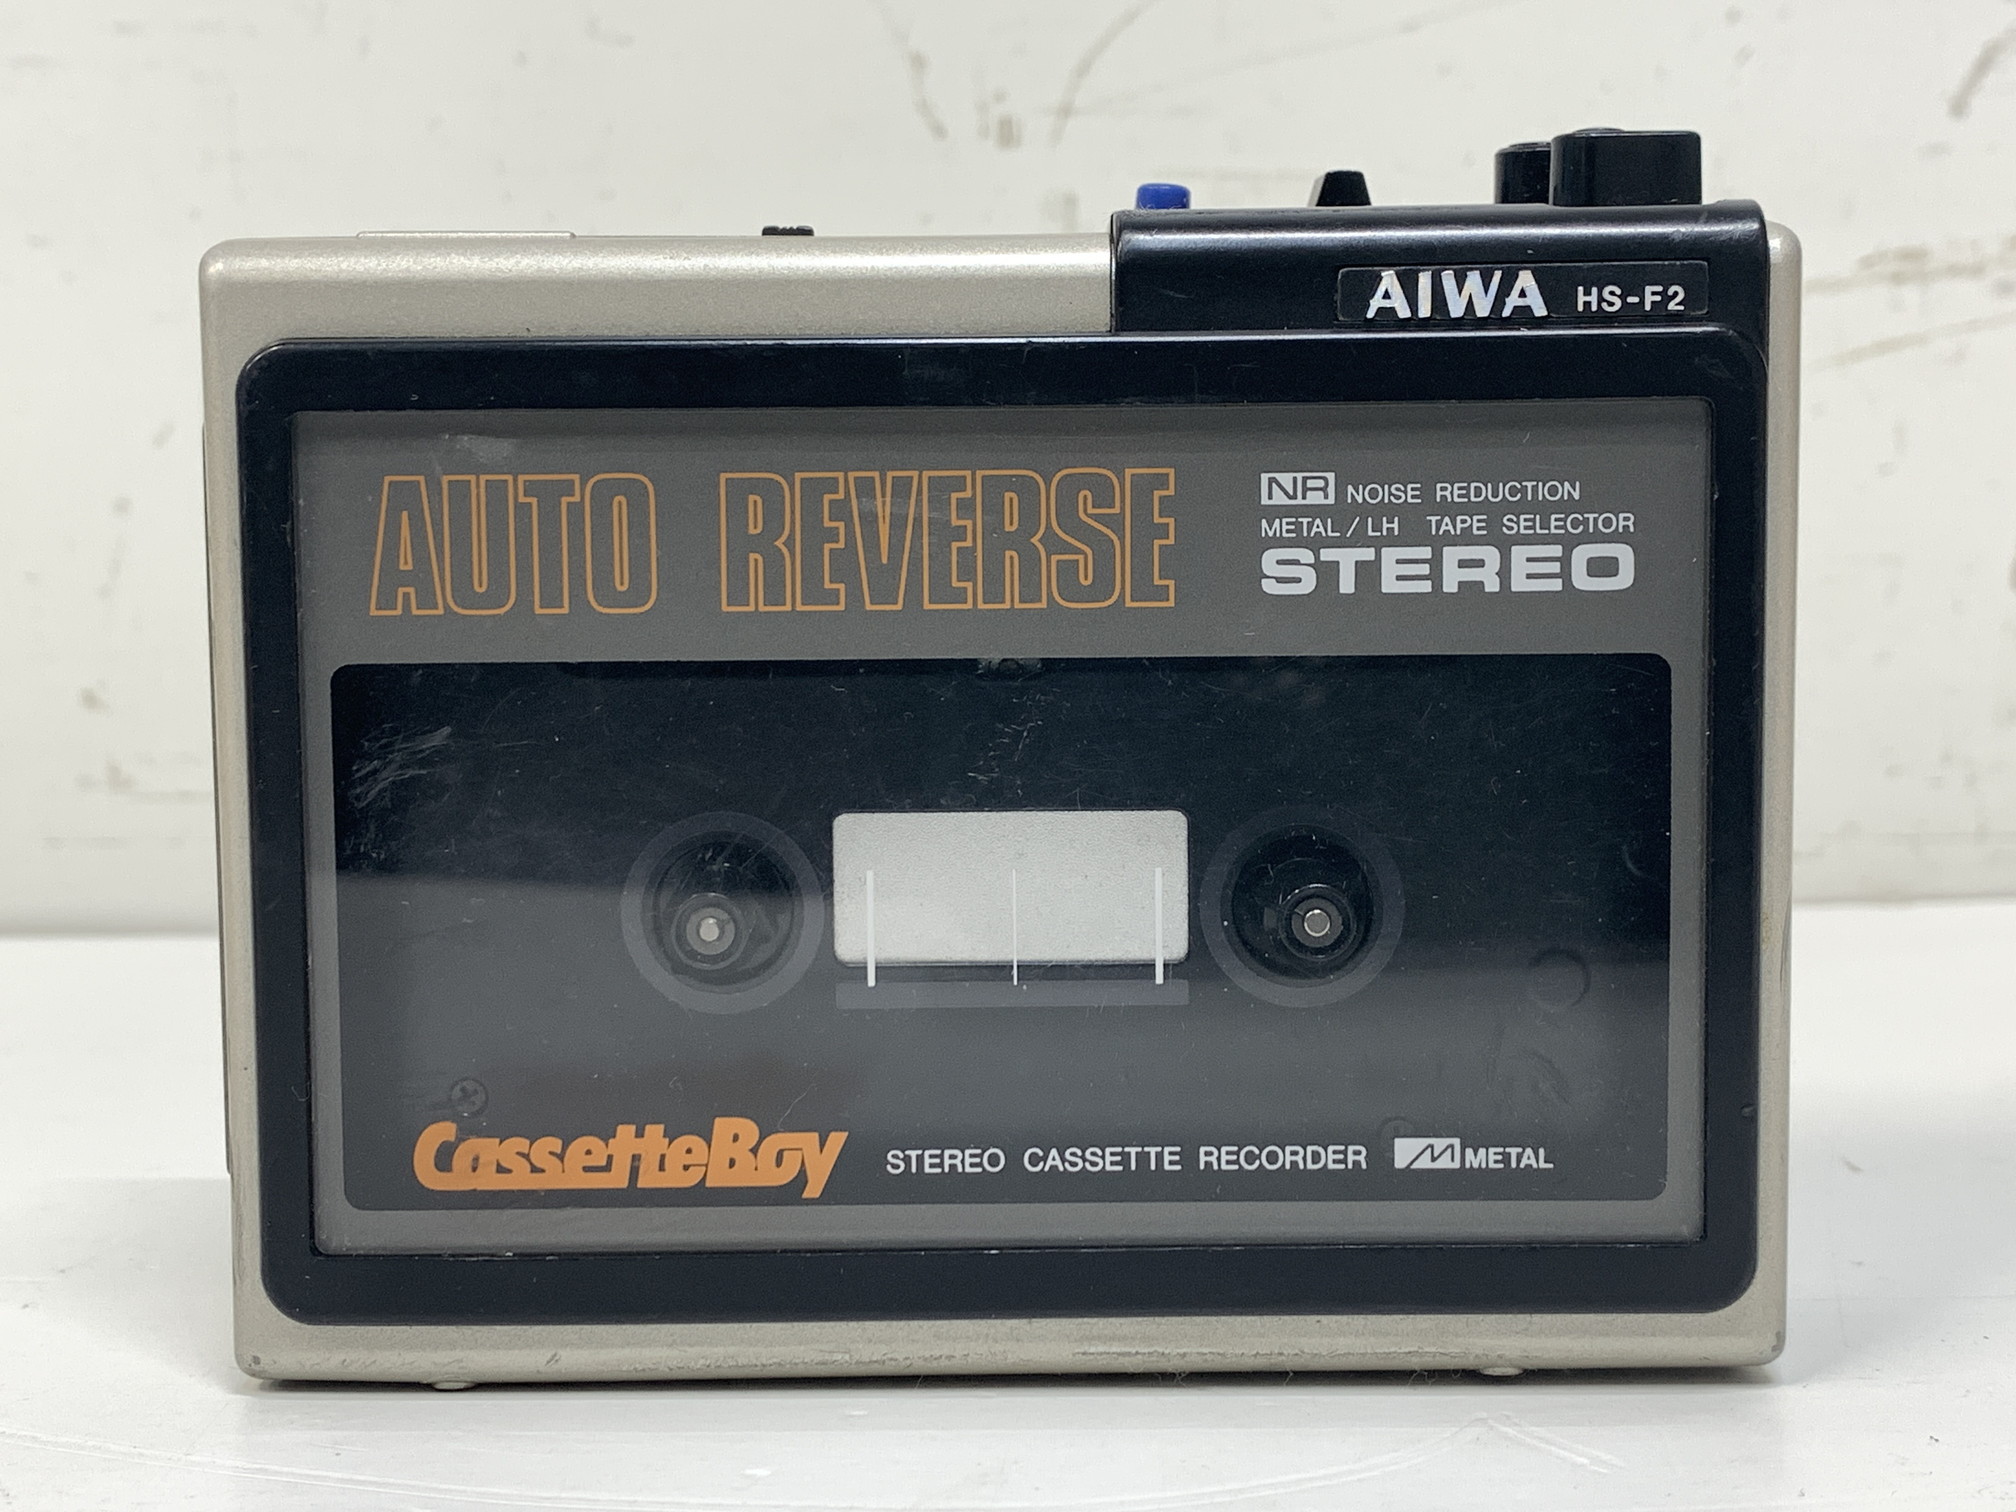 AIWA HS-F2 Cassette Boy アイワ カセットボーイ ポータブルカセットレコーダー